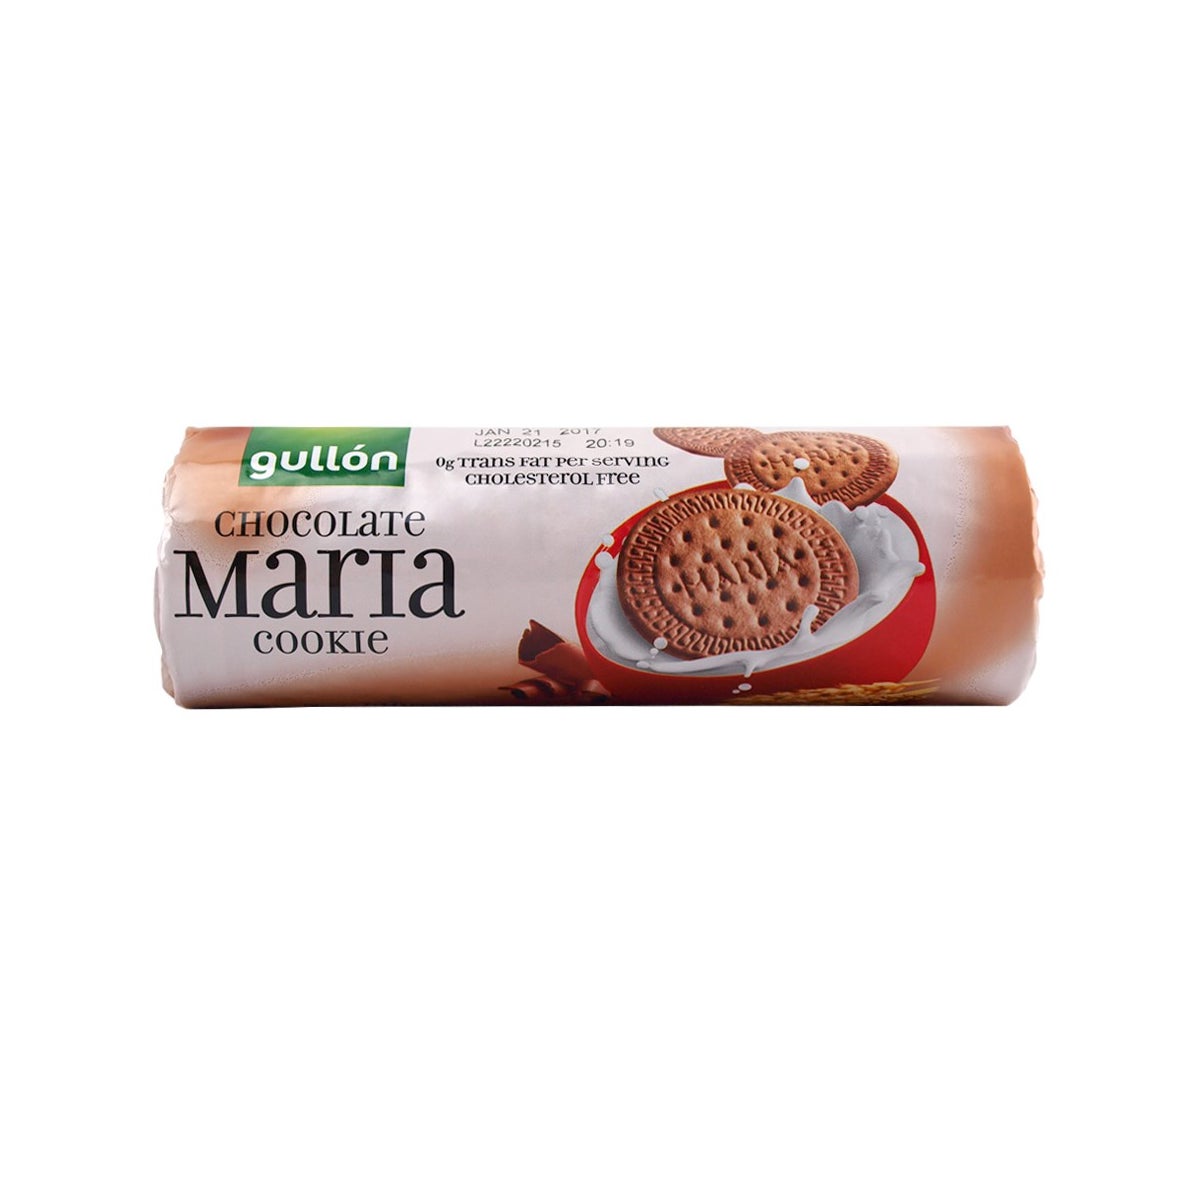 Chocolate Maria "GULLON" 200g x 16